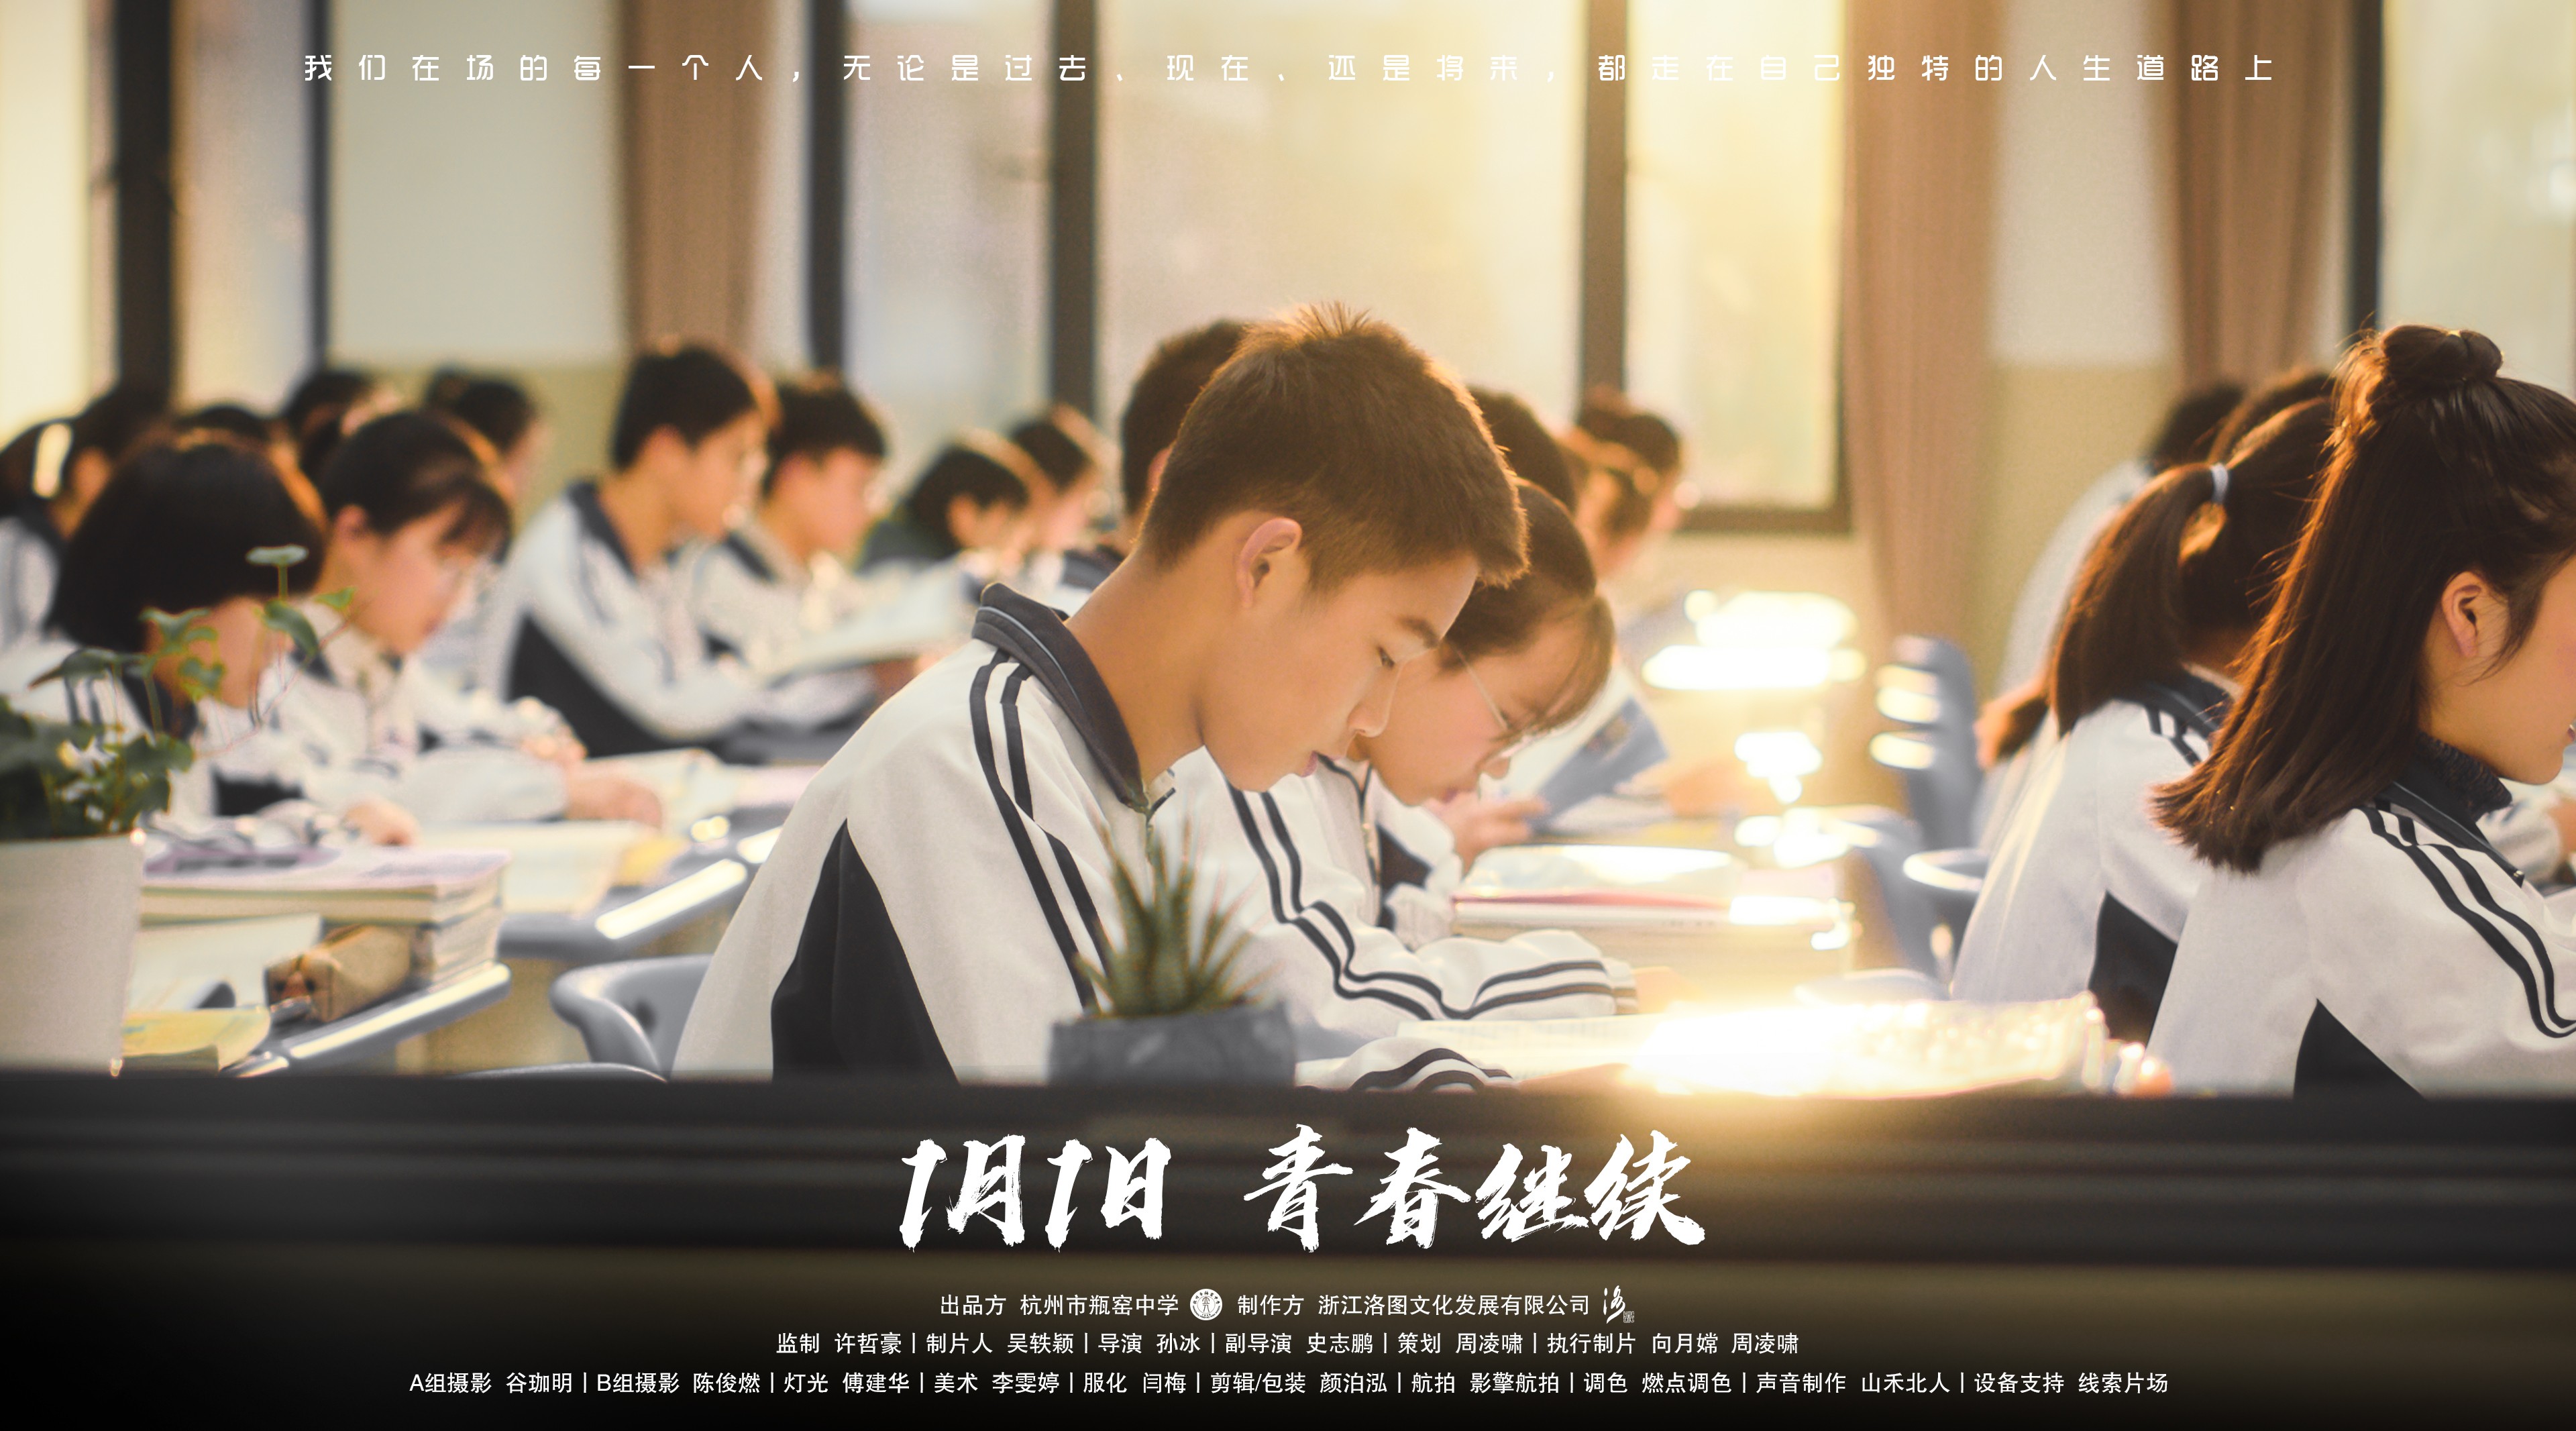 《闪闪发光的我们》丨杭州市瓶窑中学宣传片 